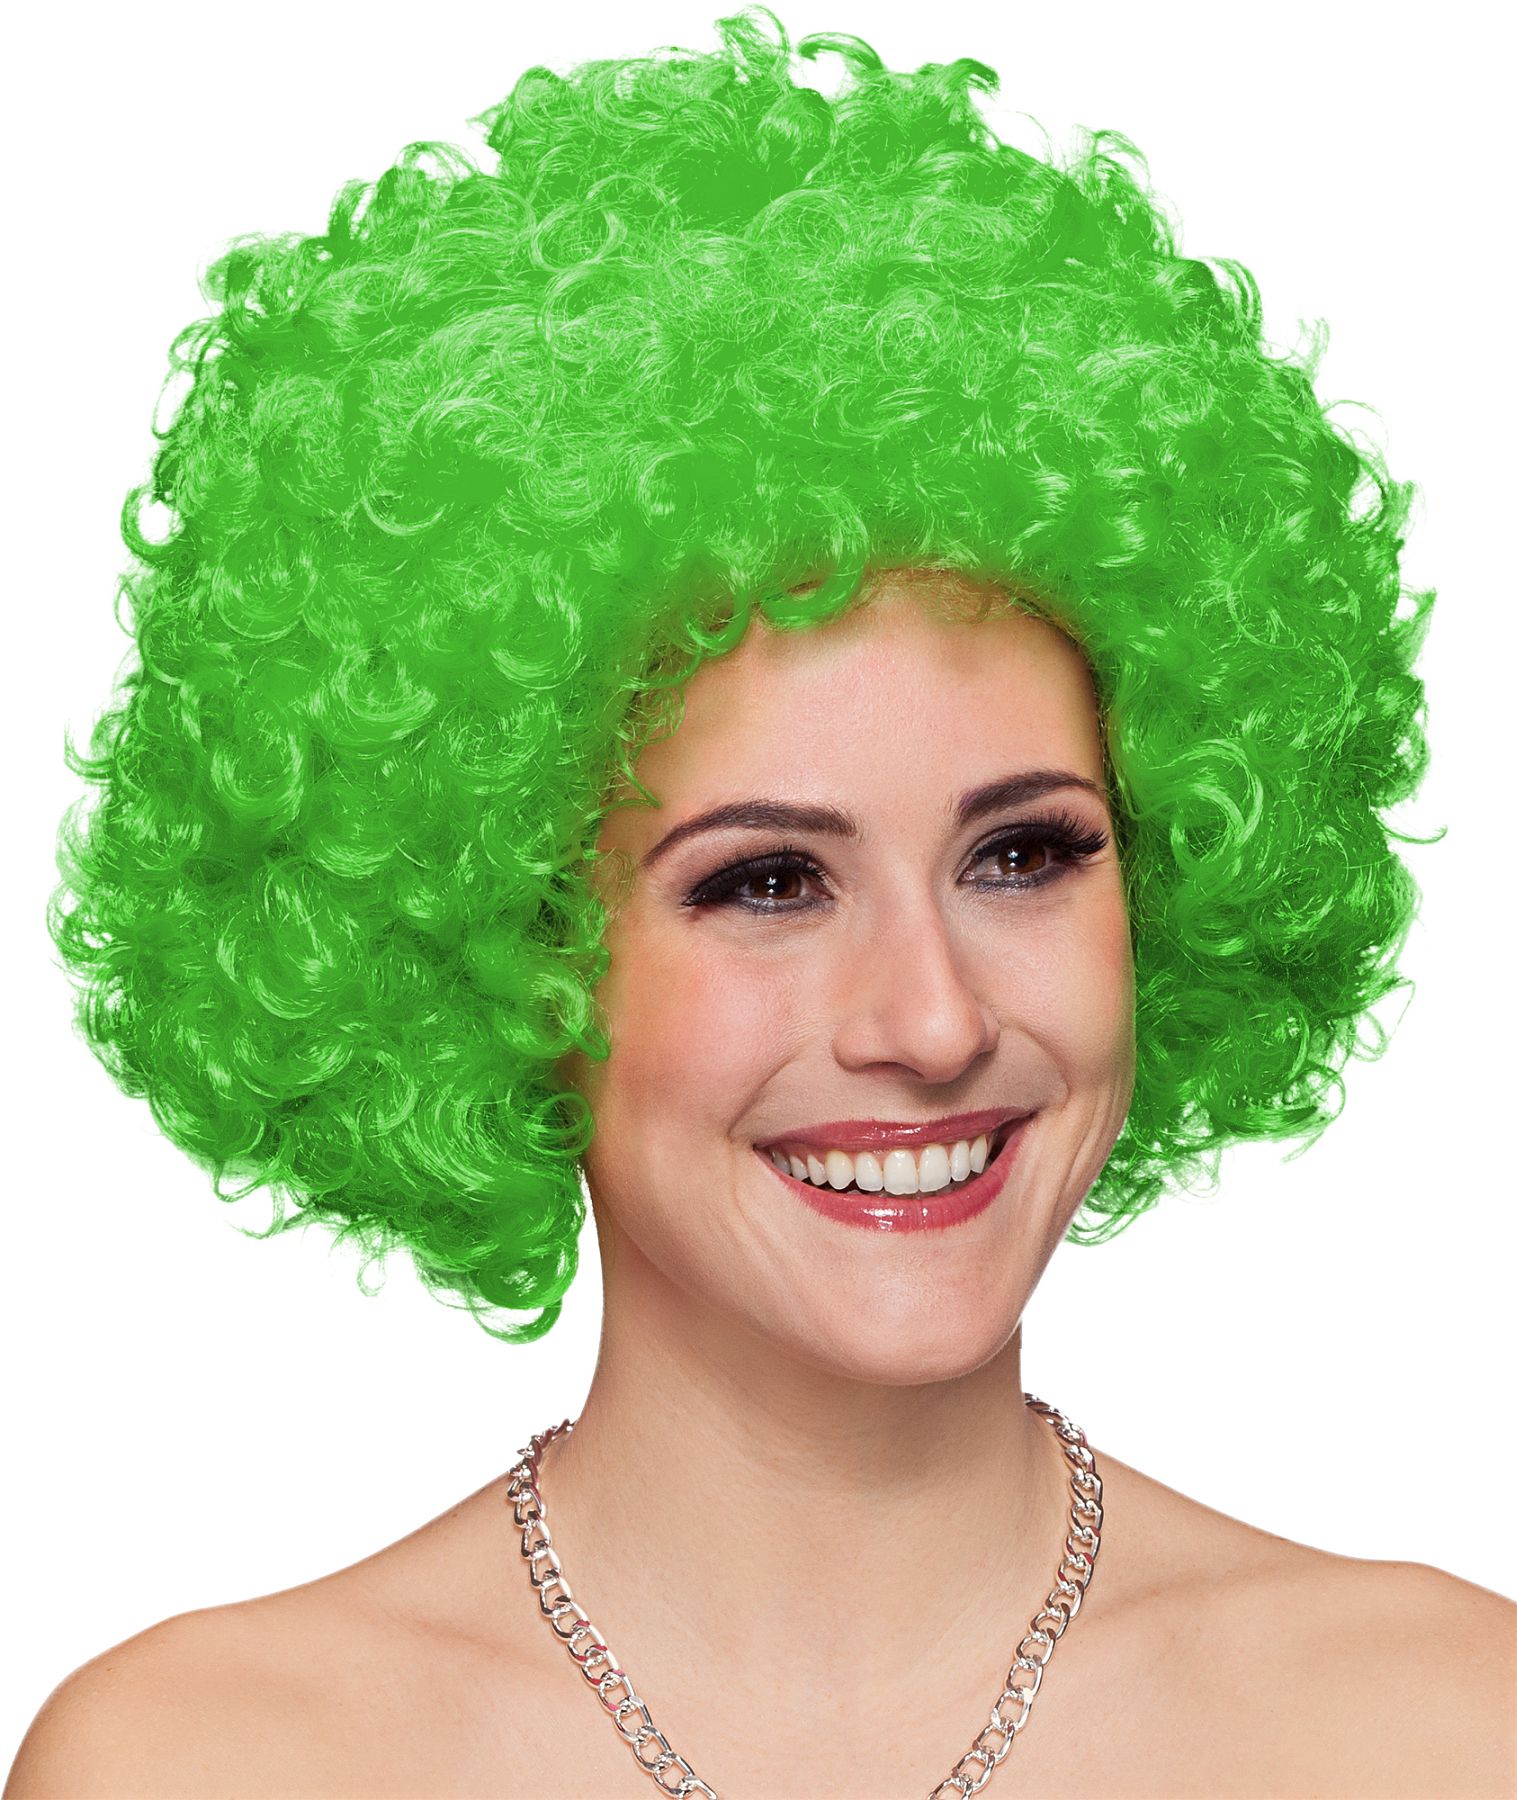 Hair, große Locke grün